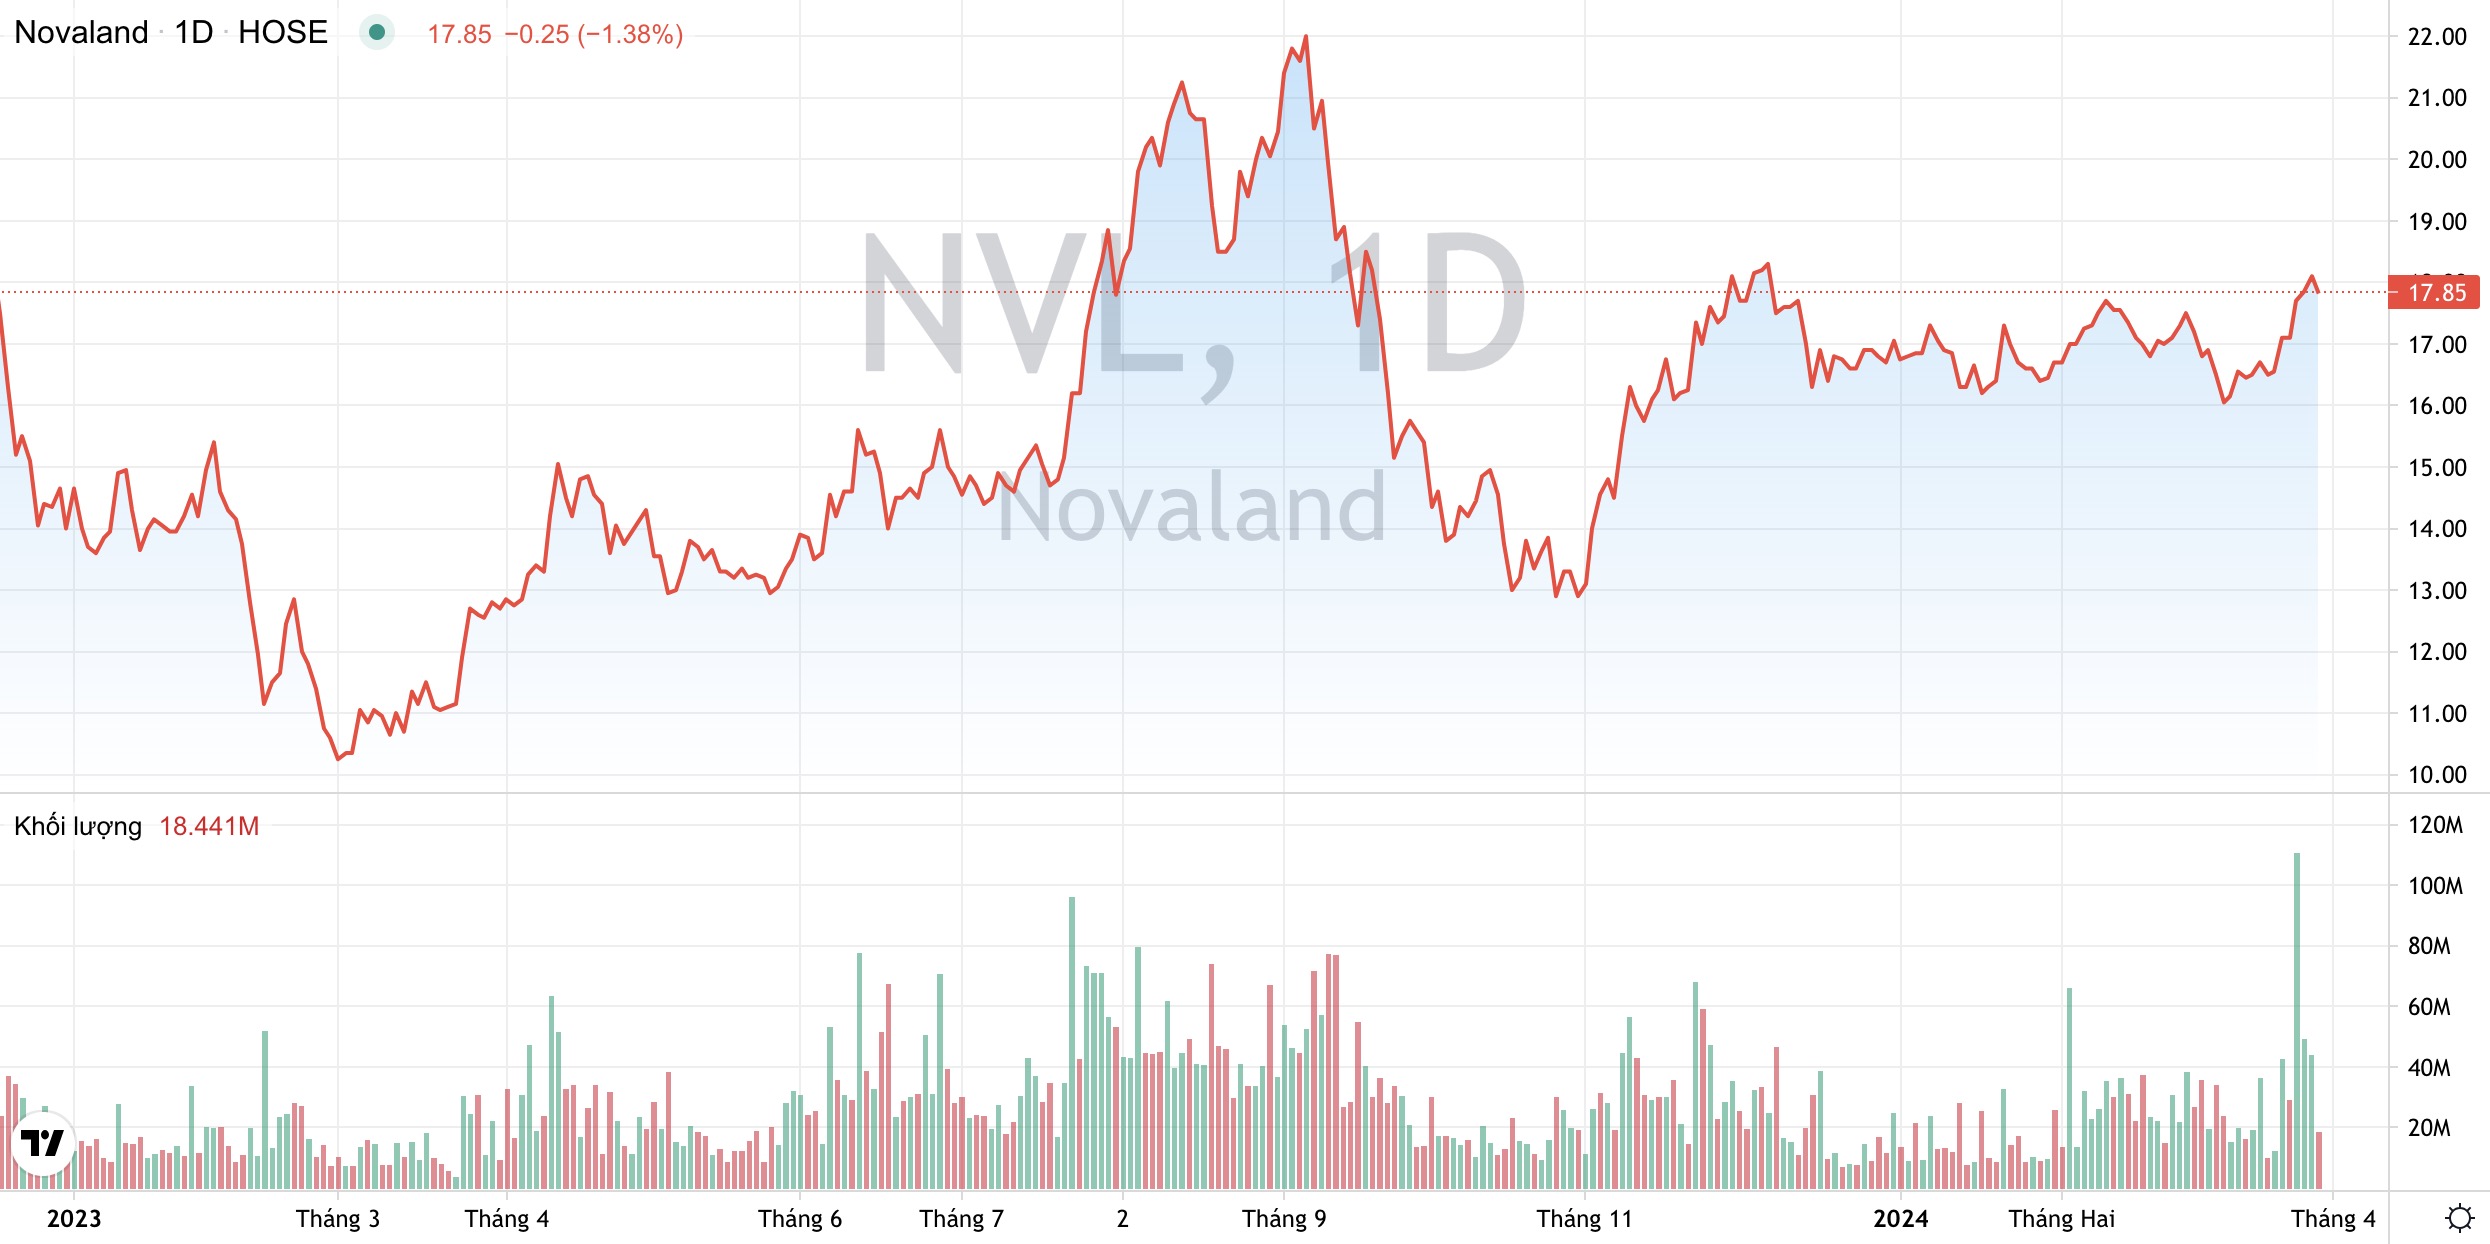 Hỗ trợ nợ cho Tập đoàn Novaland, Novagroup tiếp tục muốn bán hơn 4 triệu cổ phiếu NVL